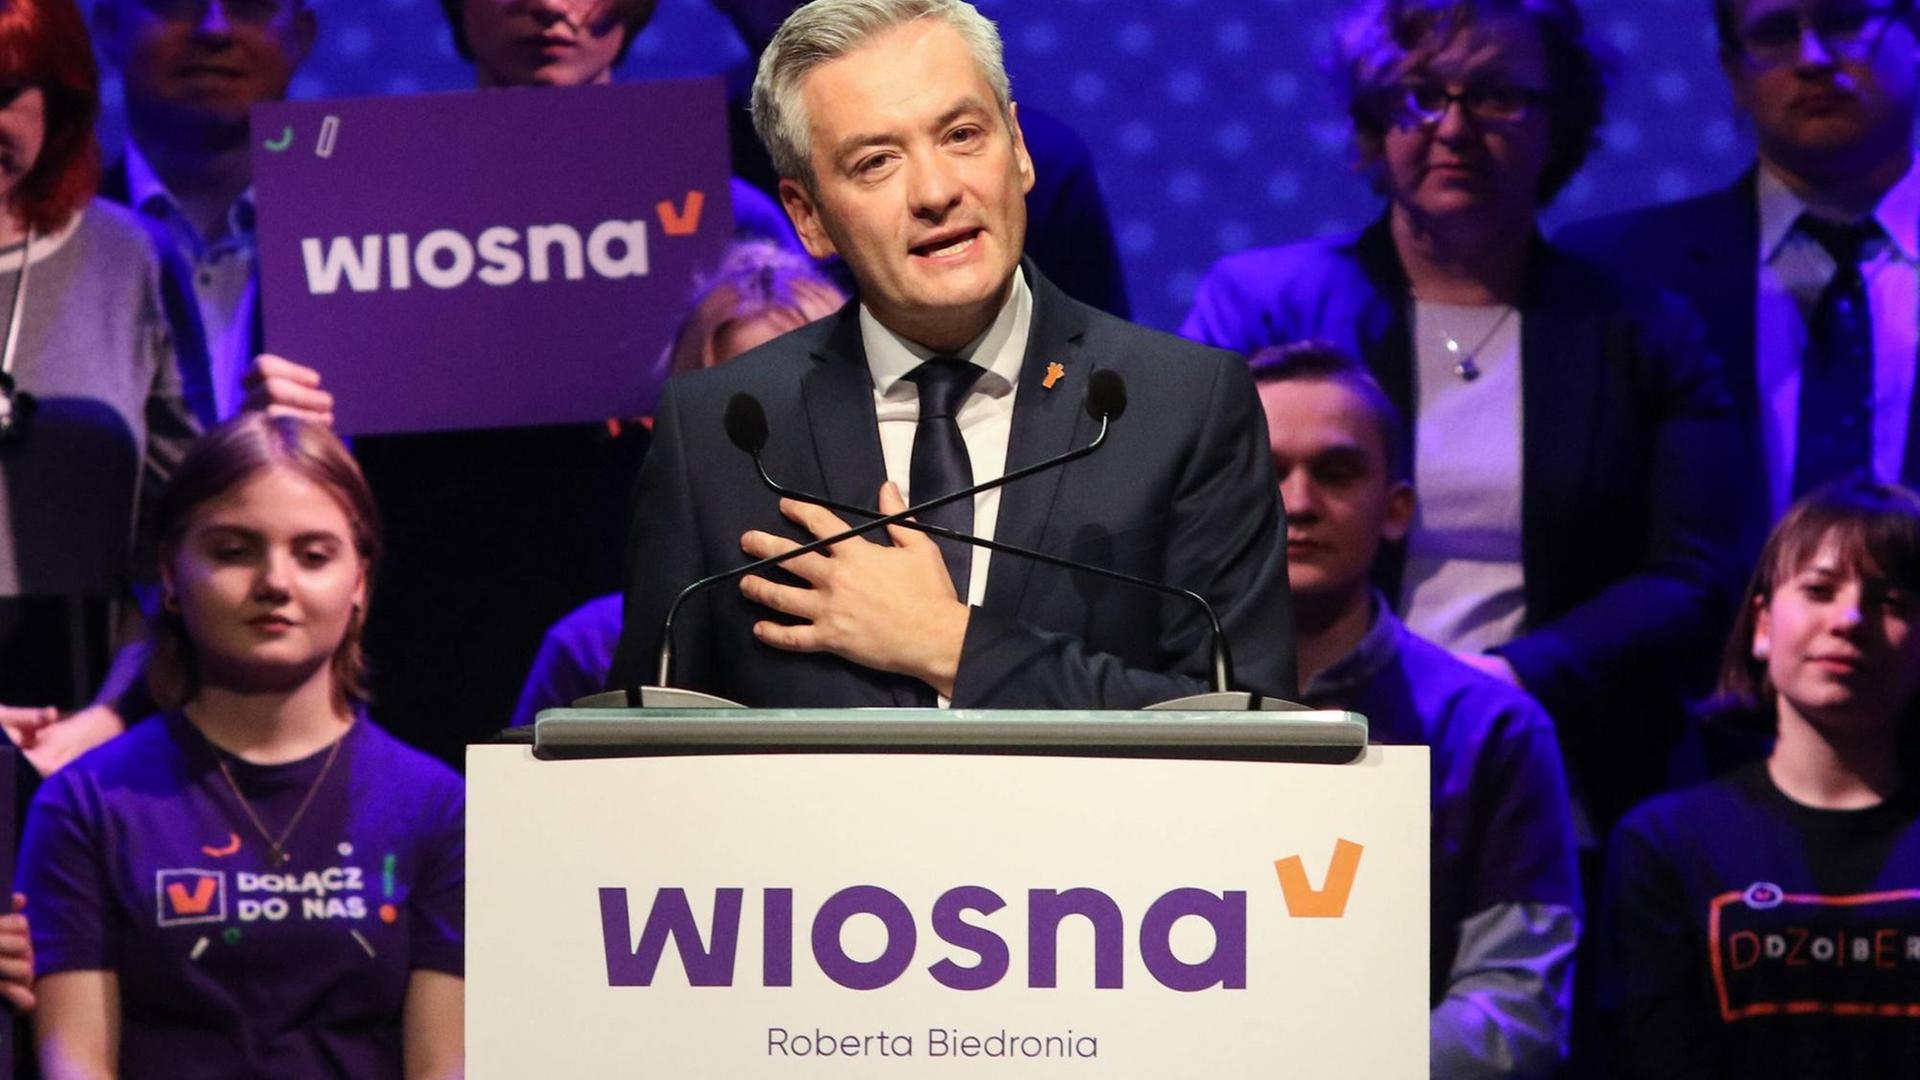 Atheist und offen homosexuell - der Vorsitzende der neu gegründeten Wiosna-Partei in Polen Robert Biedroń